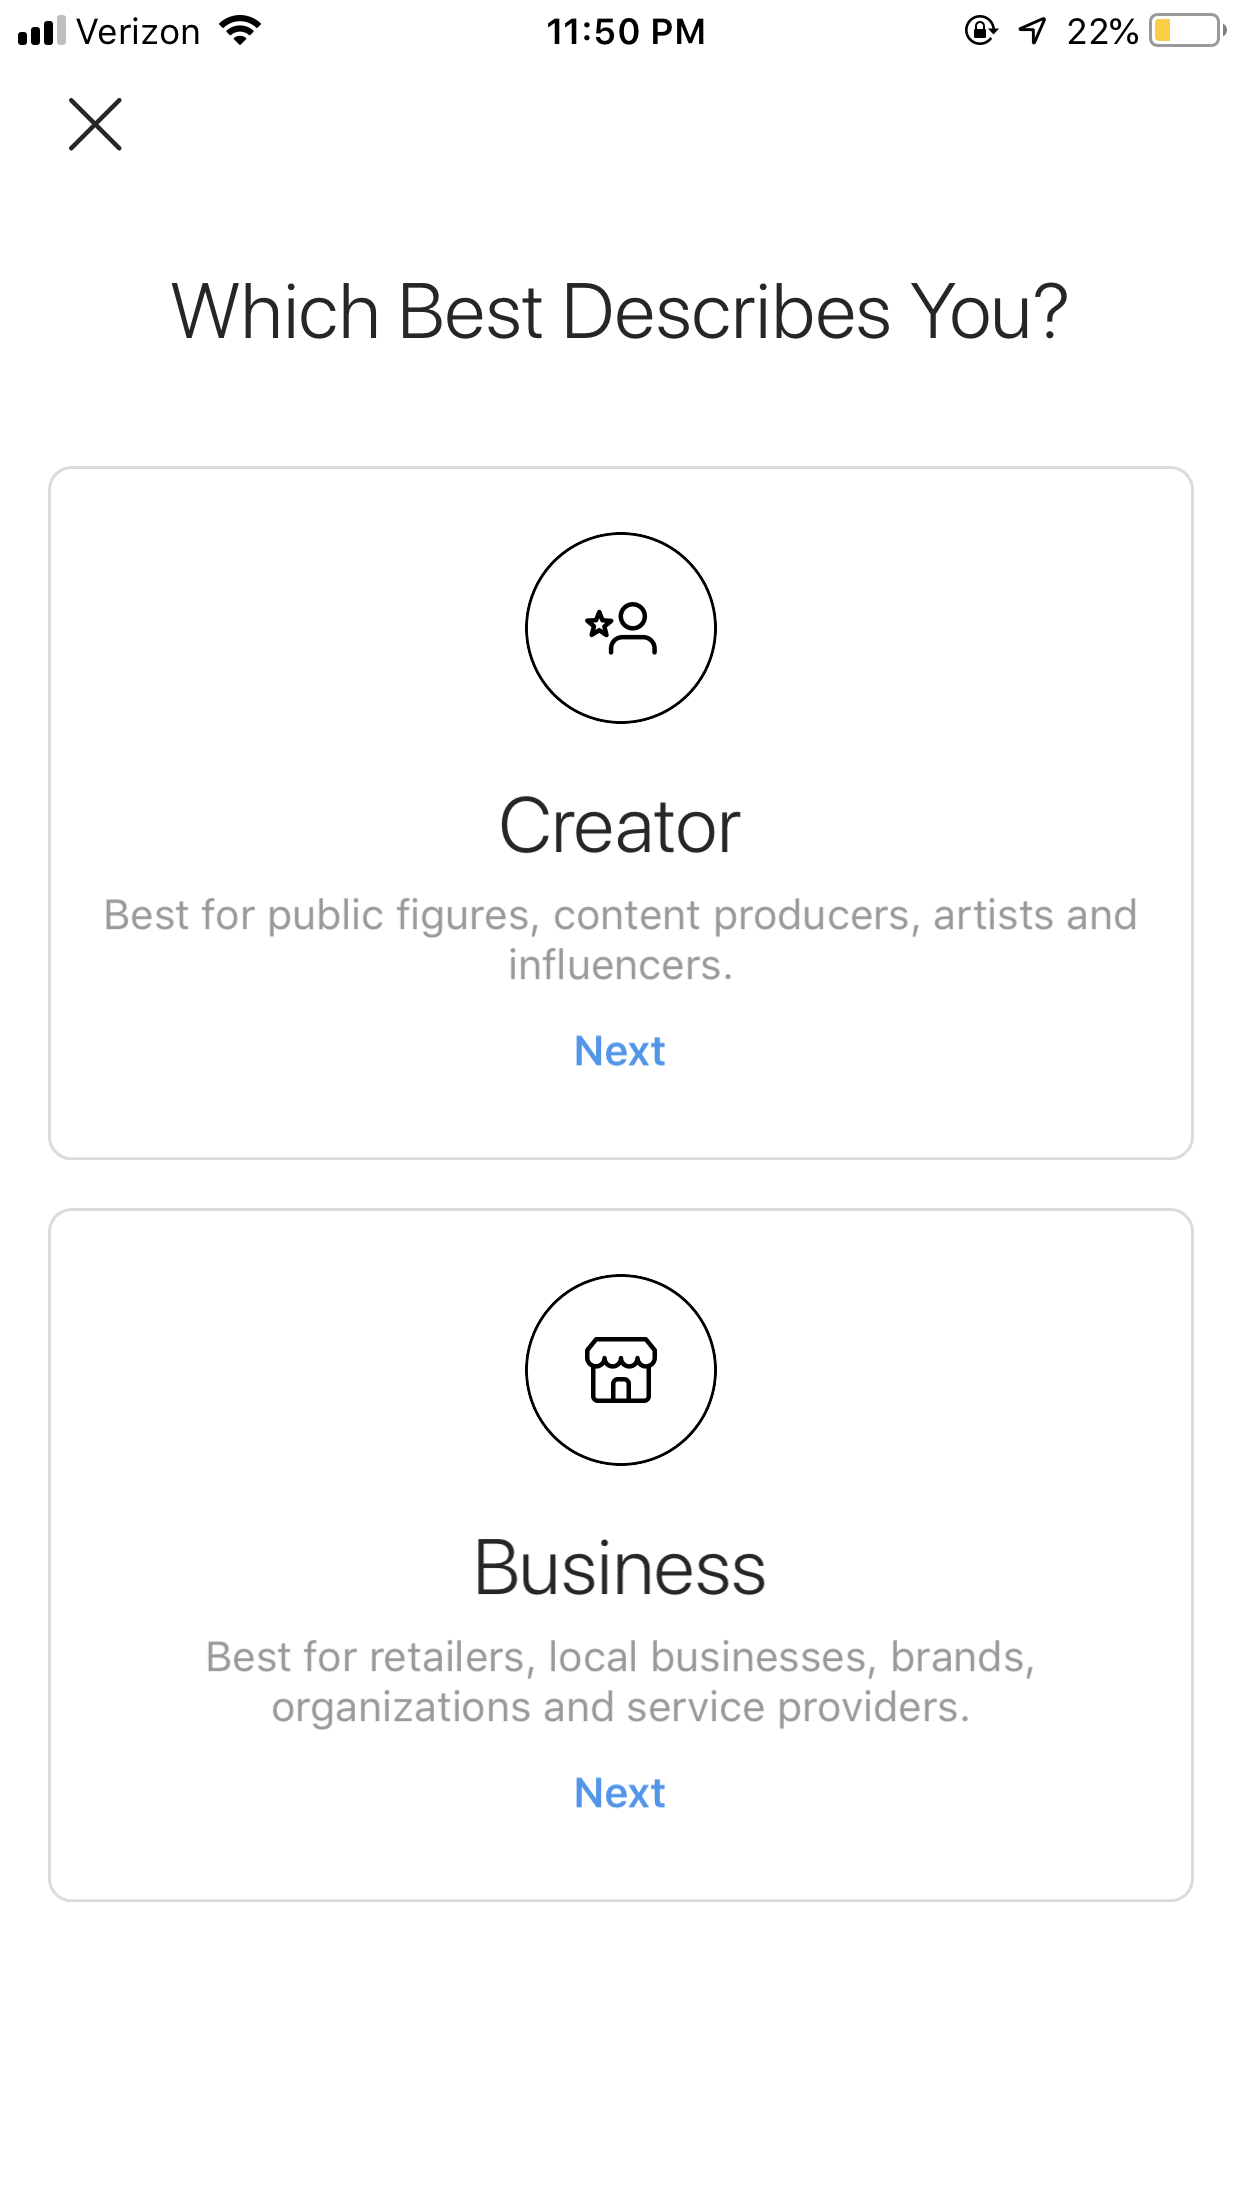 perfil empresarial de instagram - cuenta de creador vs empresa